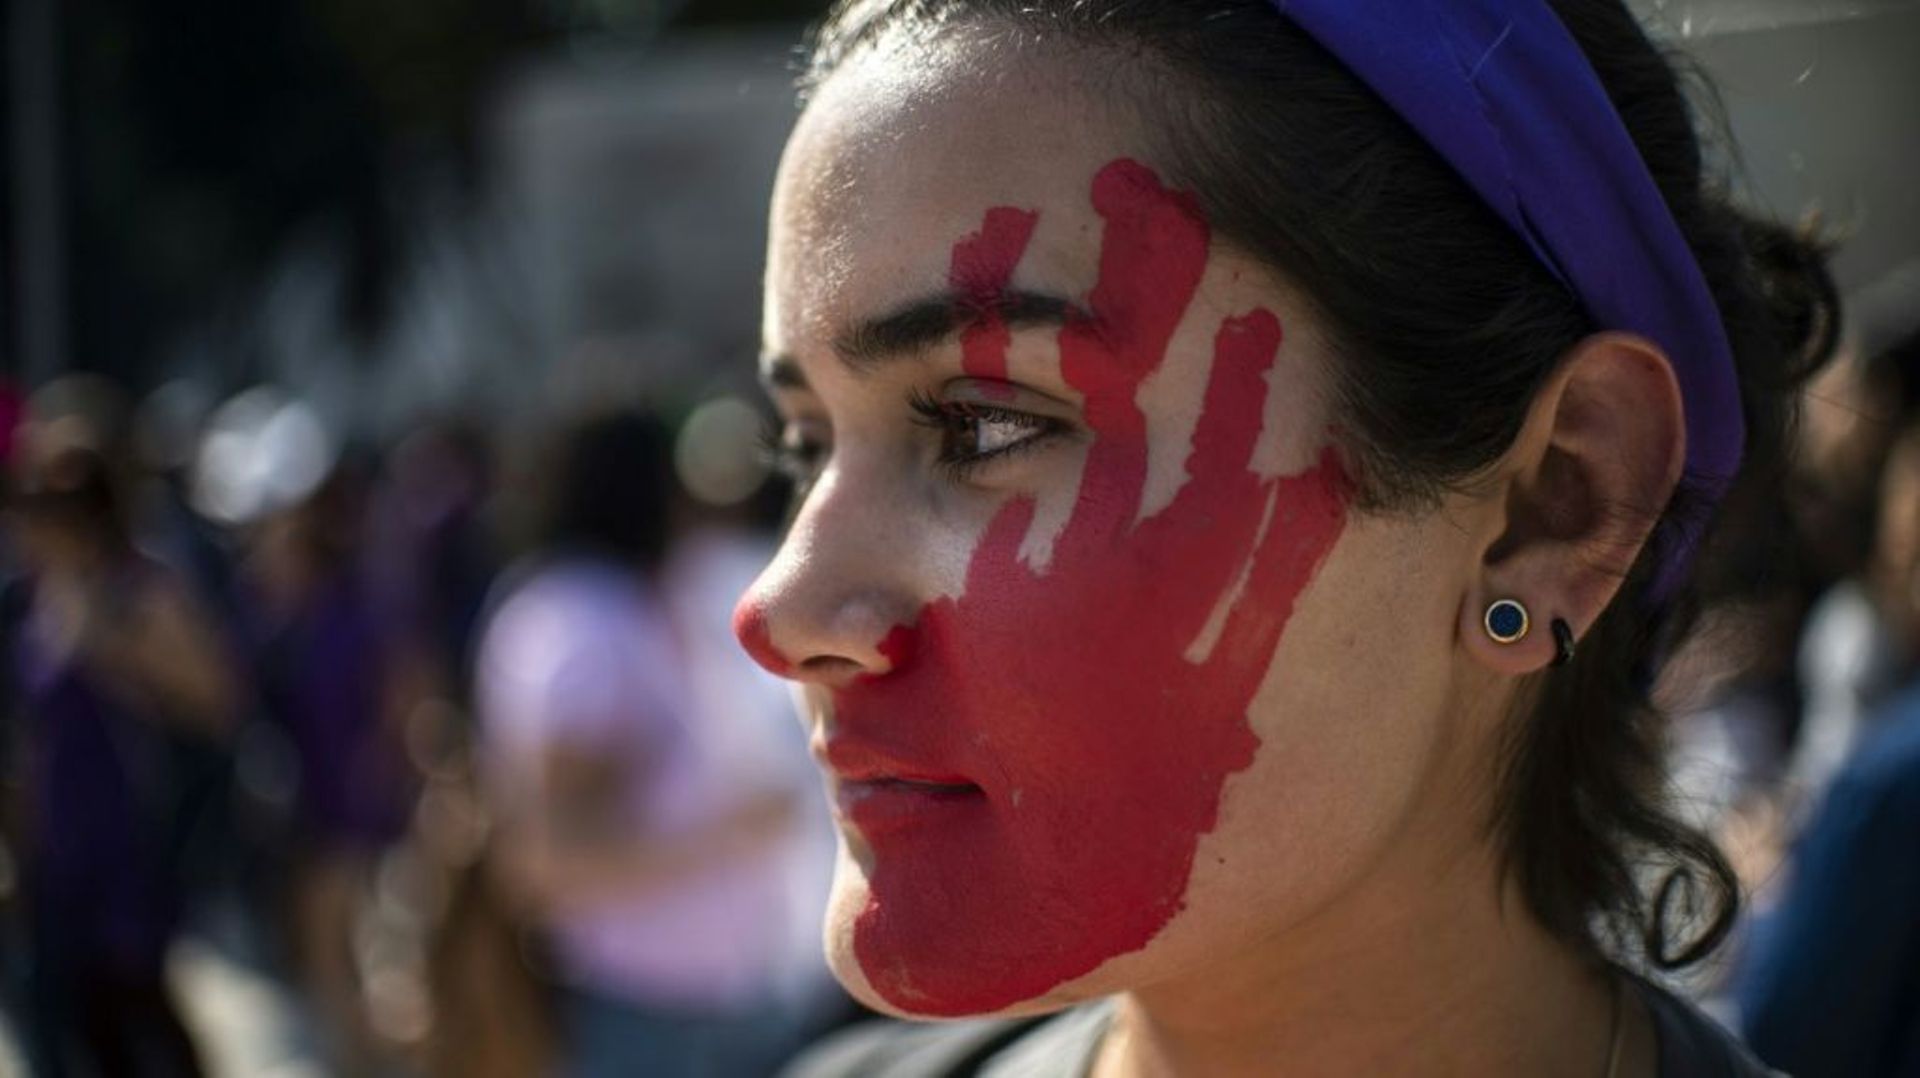 Une femme manifeste contre les violences faites à ses congénères, le 2 février 2019 à Mexico